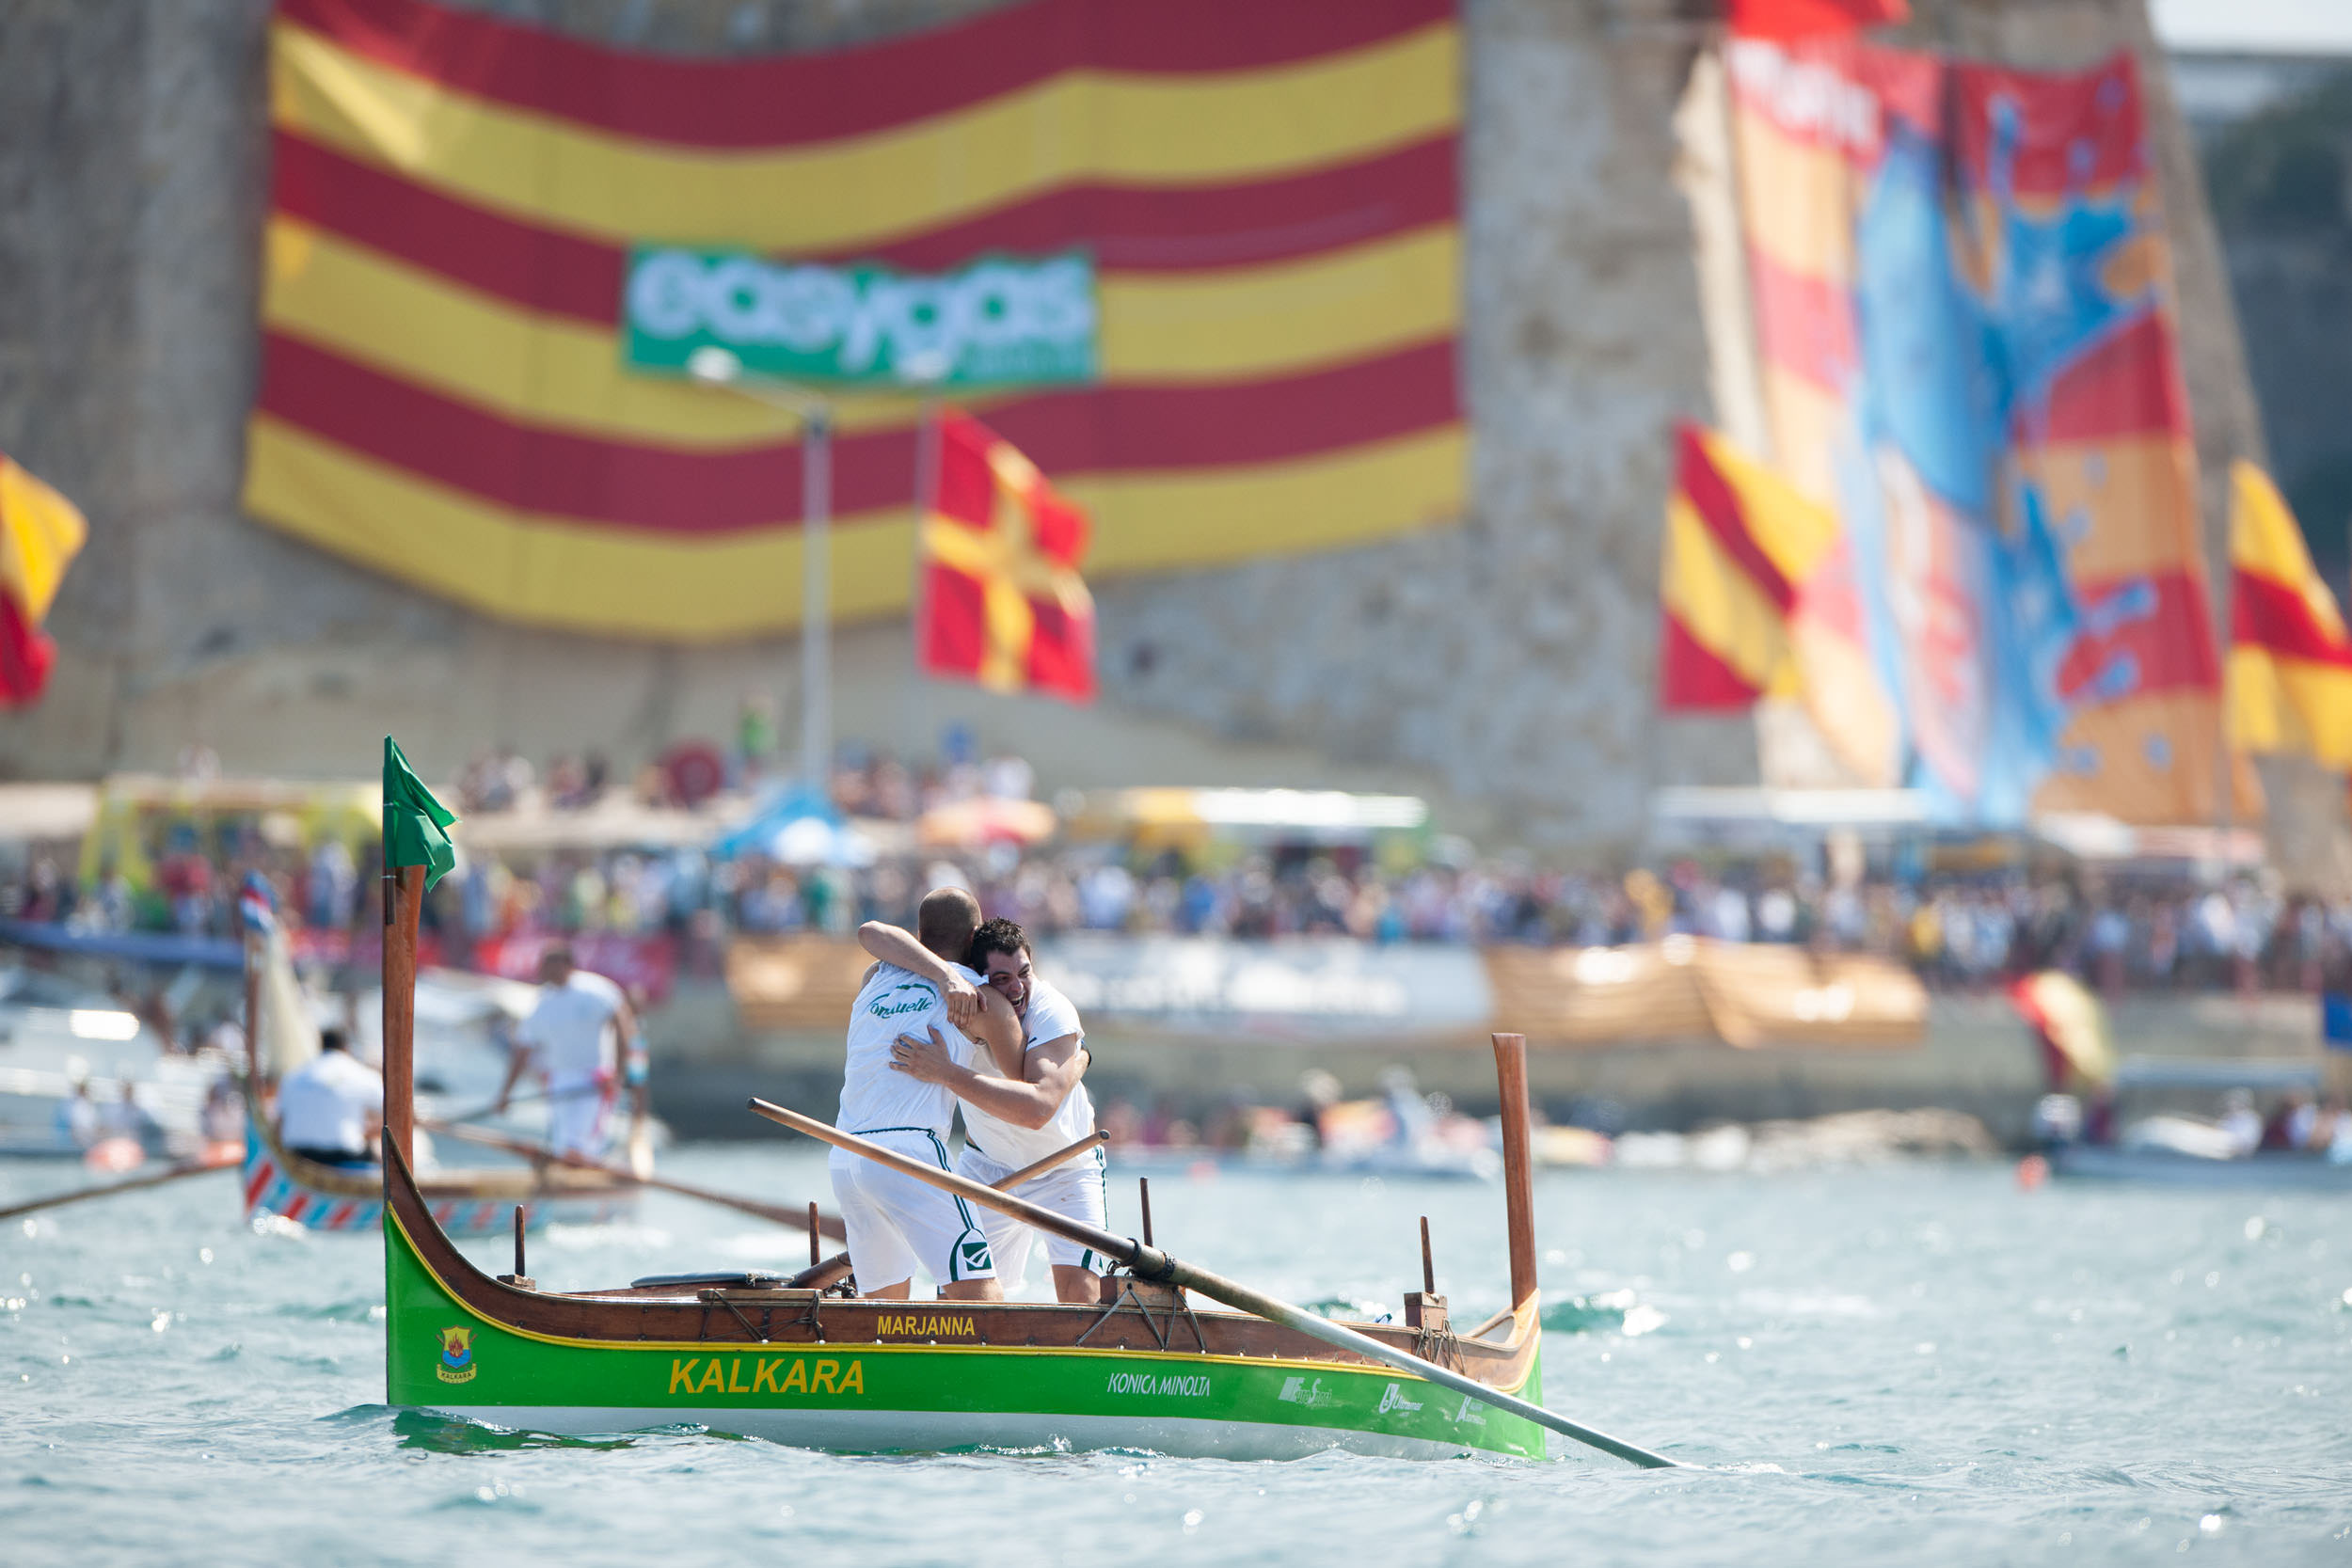 8th September rowing regatta // Malta 